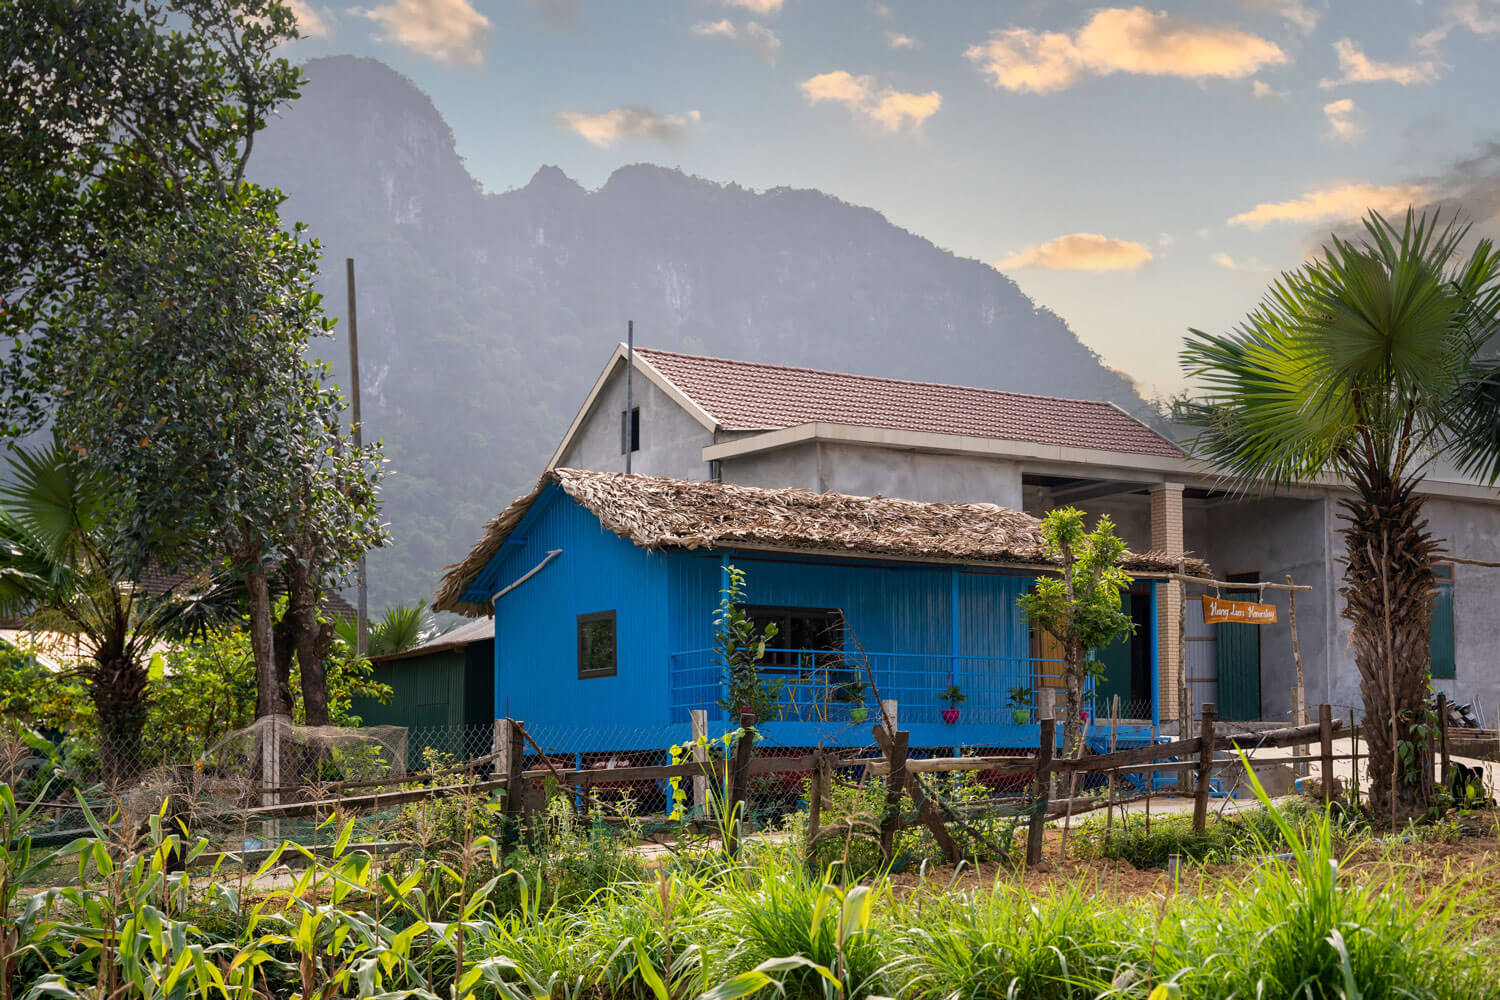 Rural Homestay-một loại hình lưu trú ấn tượng với việc sử dụng loại hình nhà nổi của người dân địa phương khu vực “rốn lũ” tỉnh Quảng Bình.